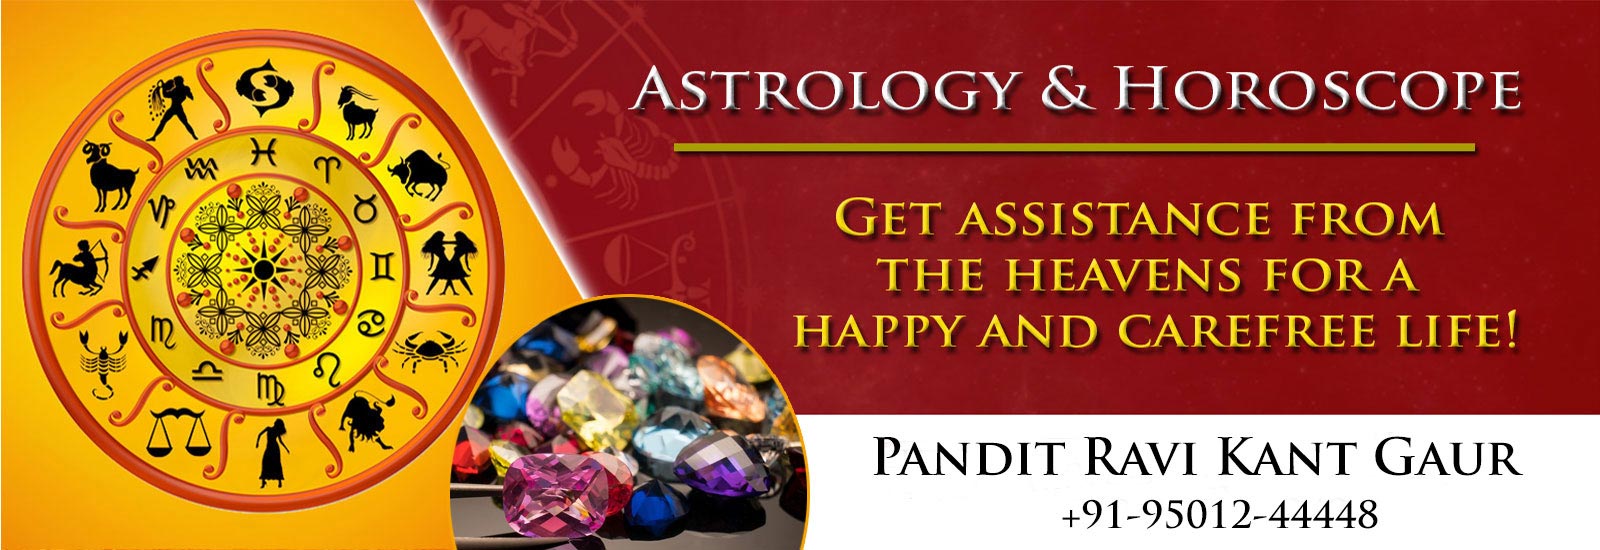 Astrologer & horoscope